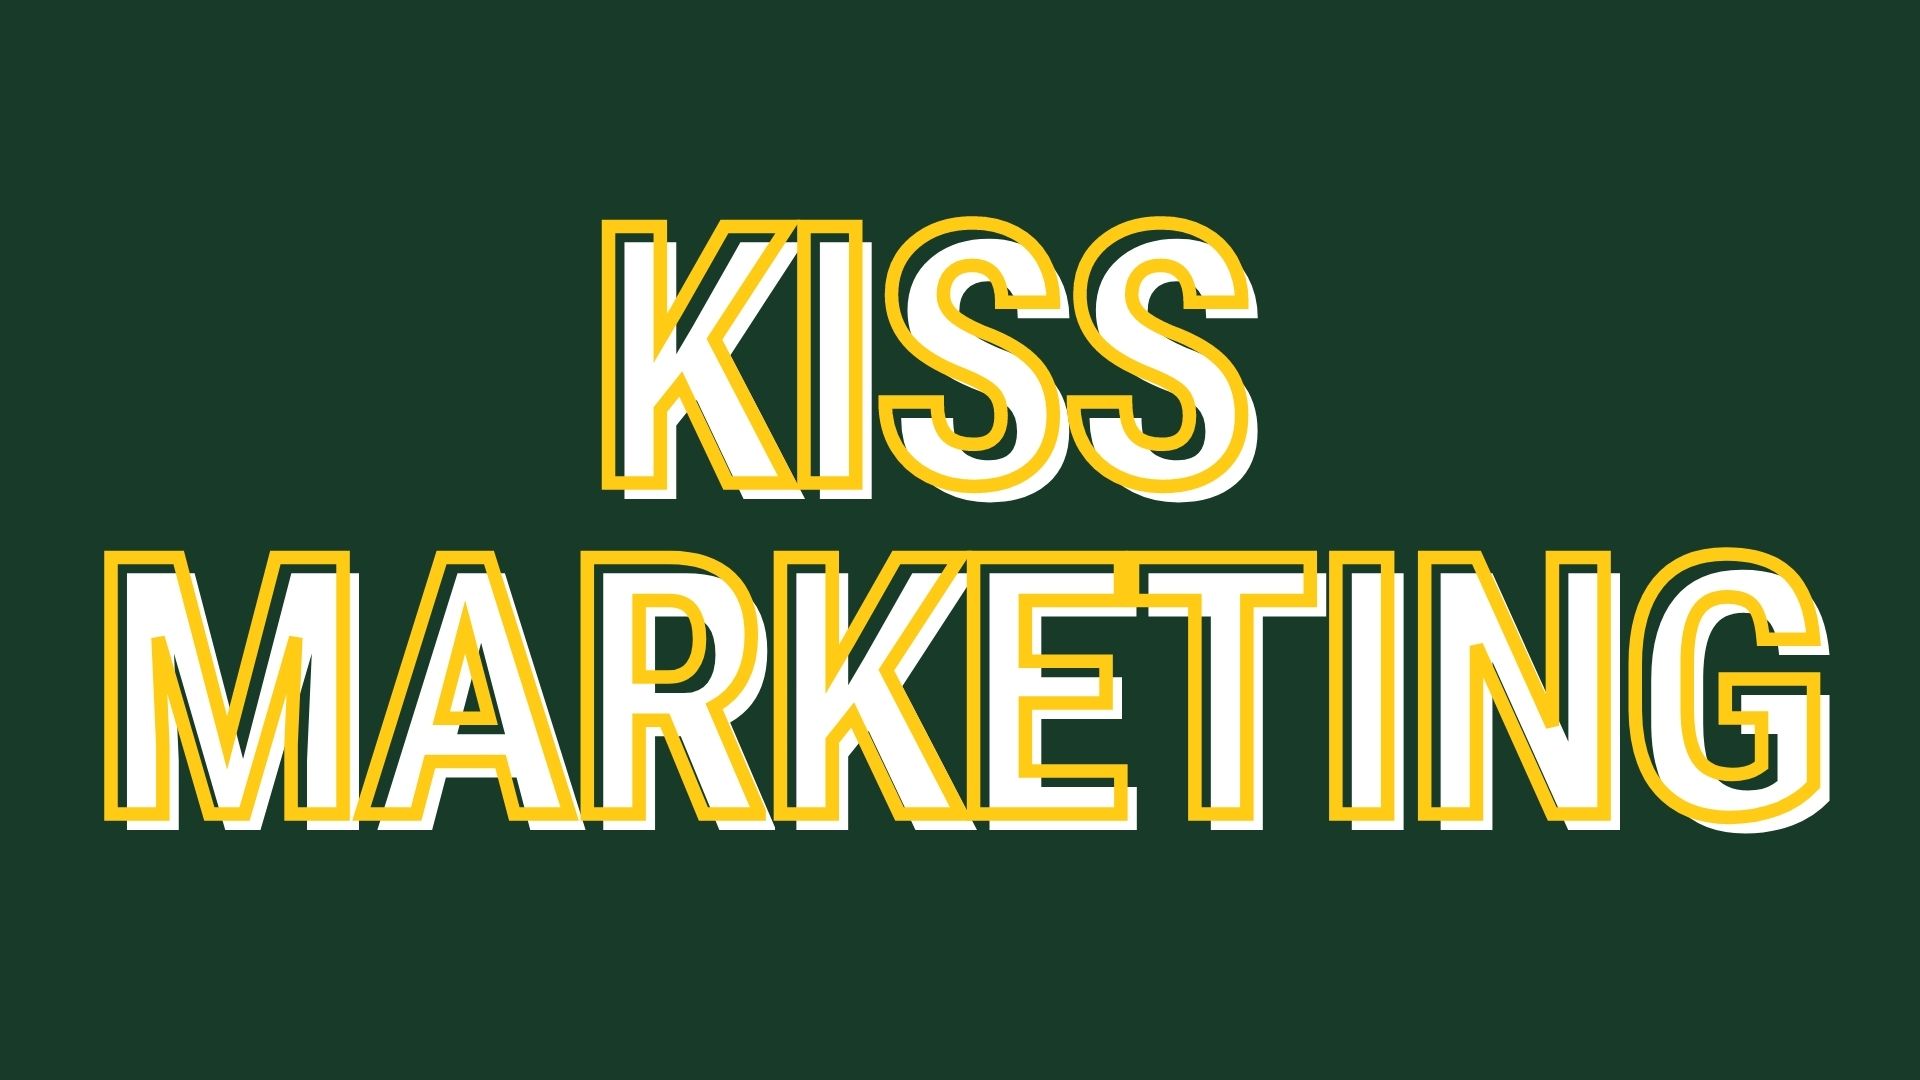 Kiss marketing